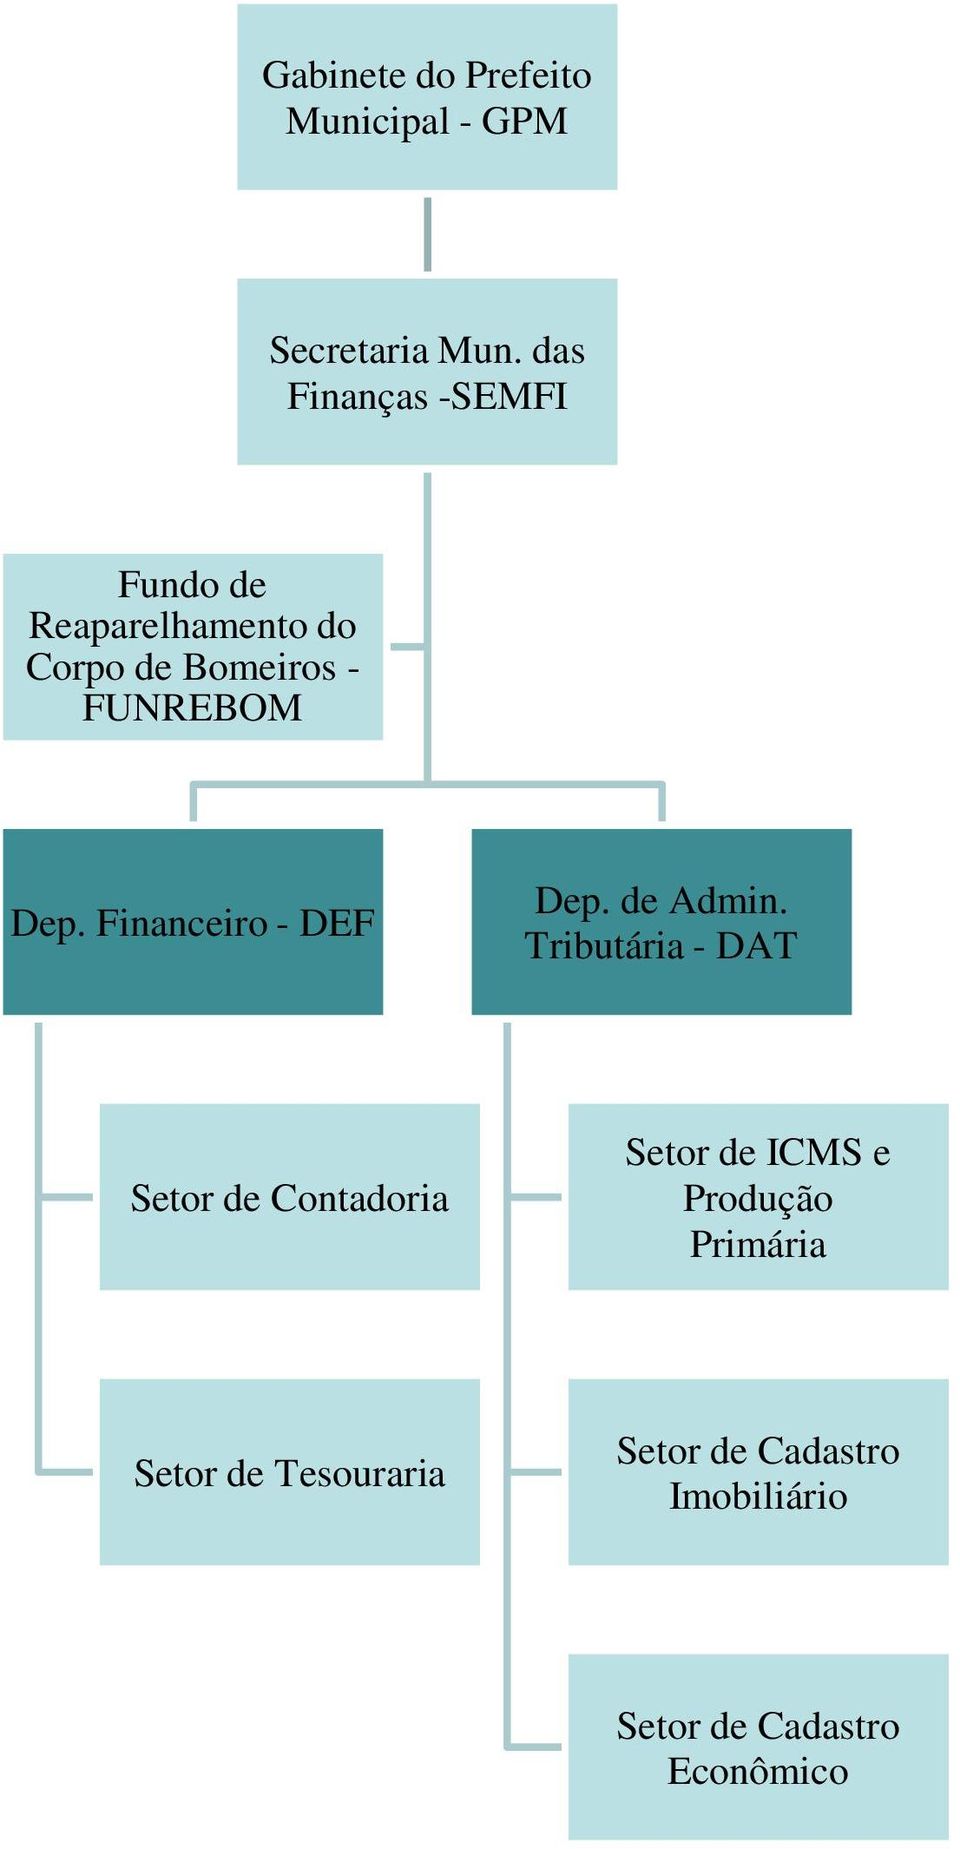 Bomeiros - FUNREBOM Dep. Financeiro - DEF Admin.